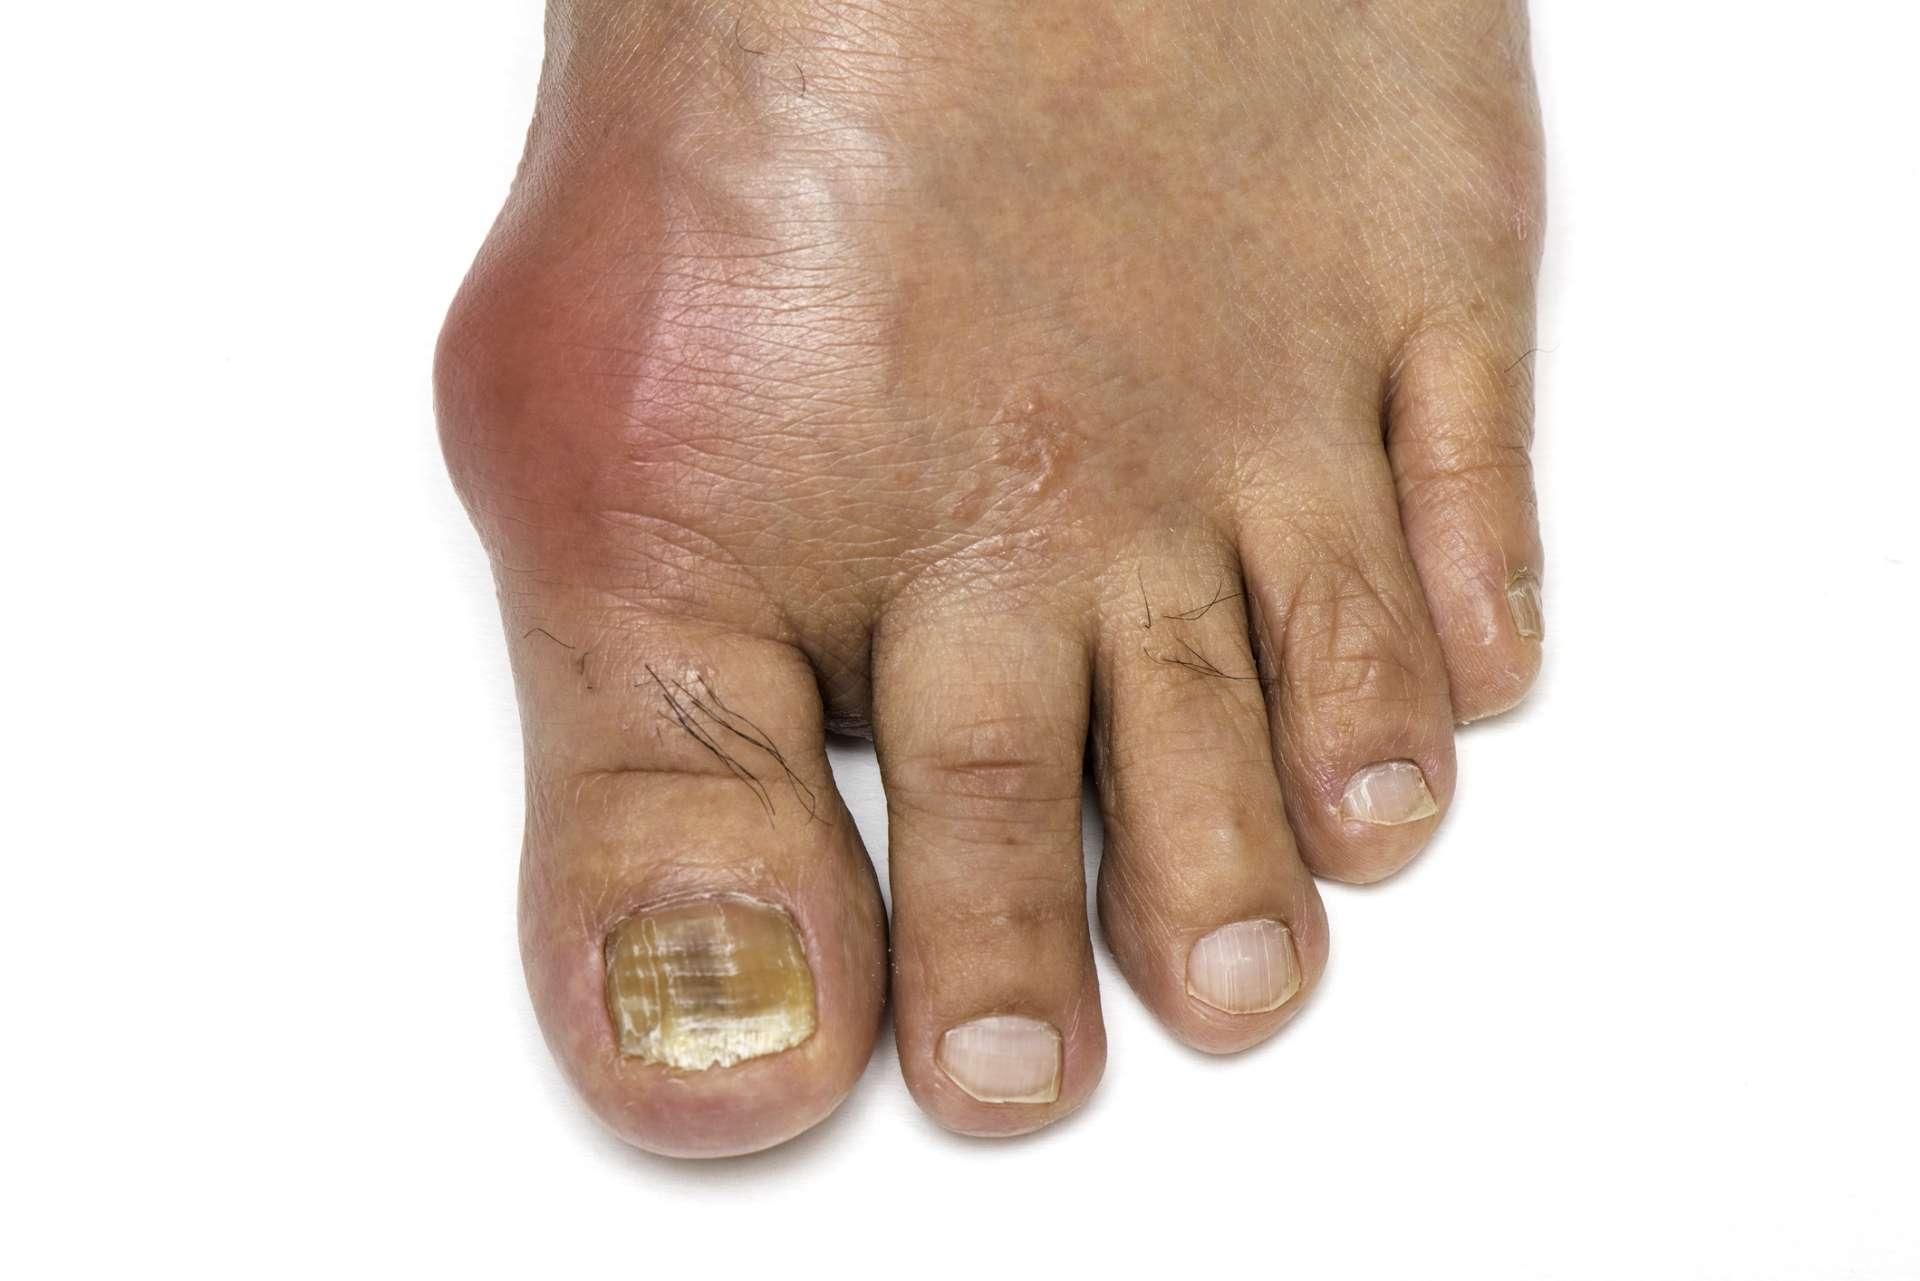 Fuß mit Gicht und Pilz-Zehennagel infiziert